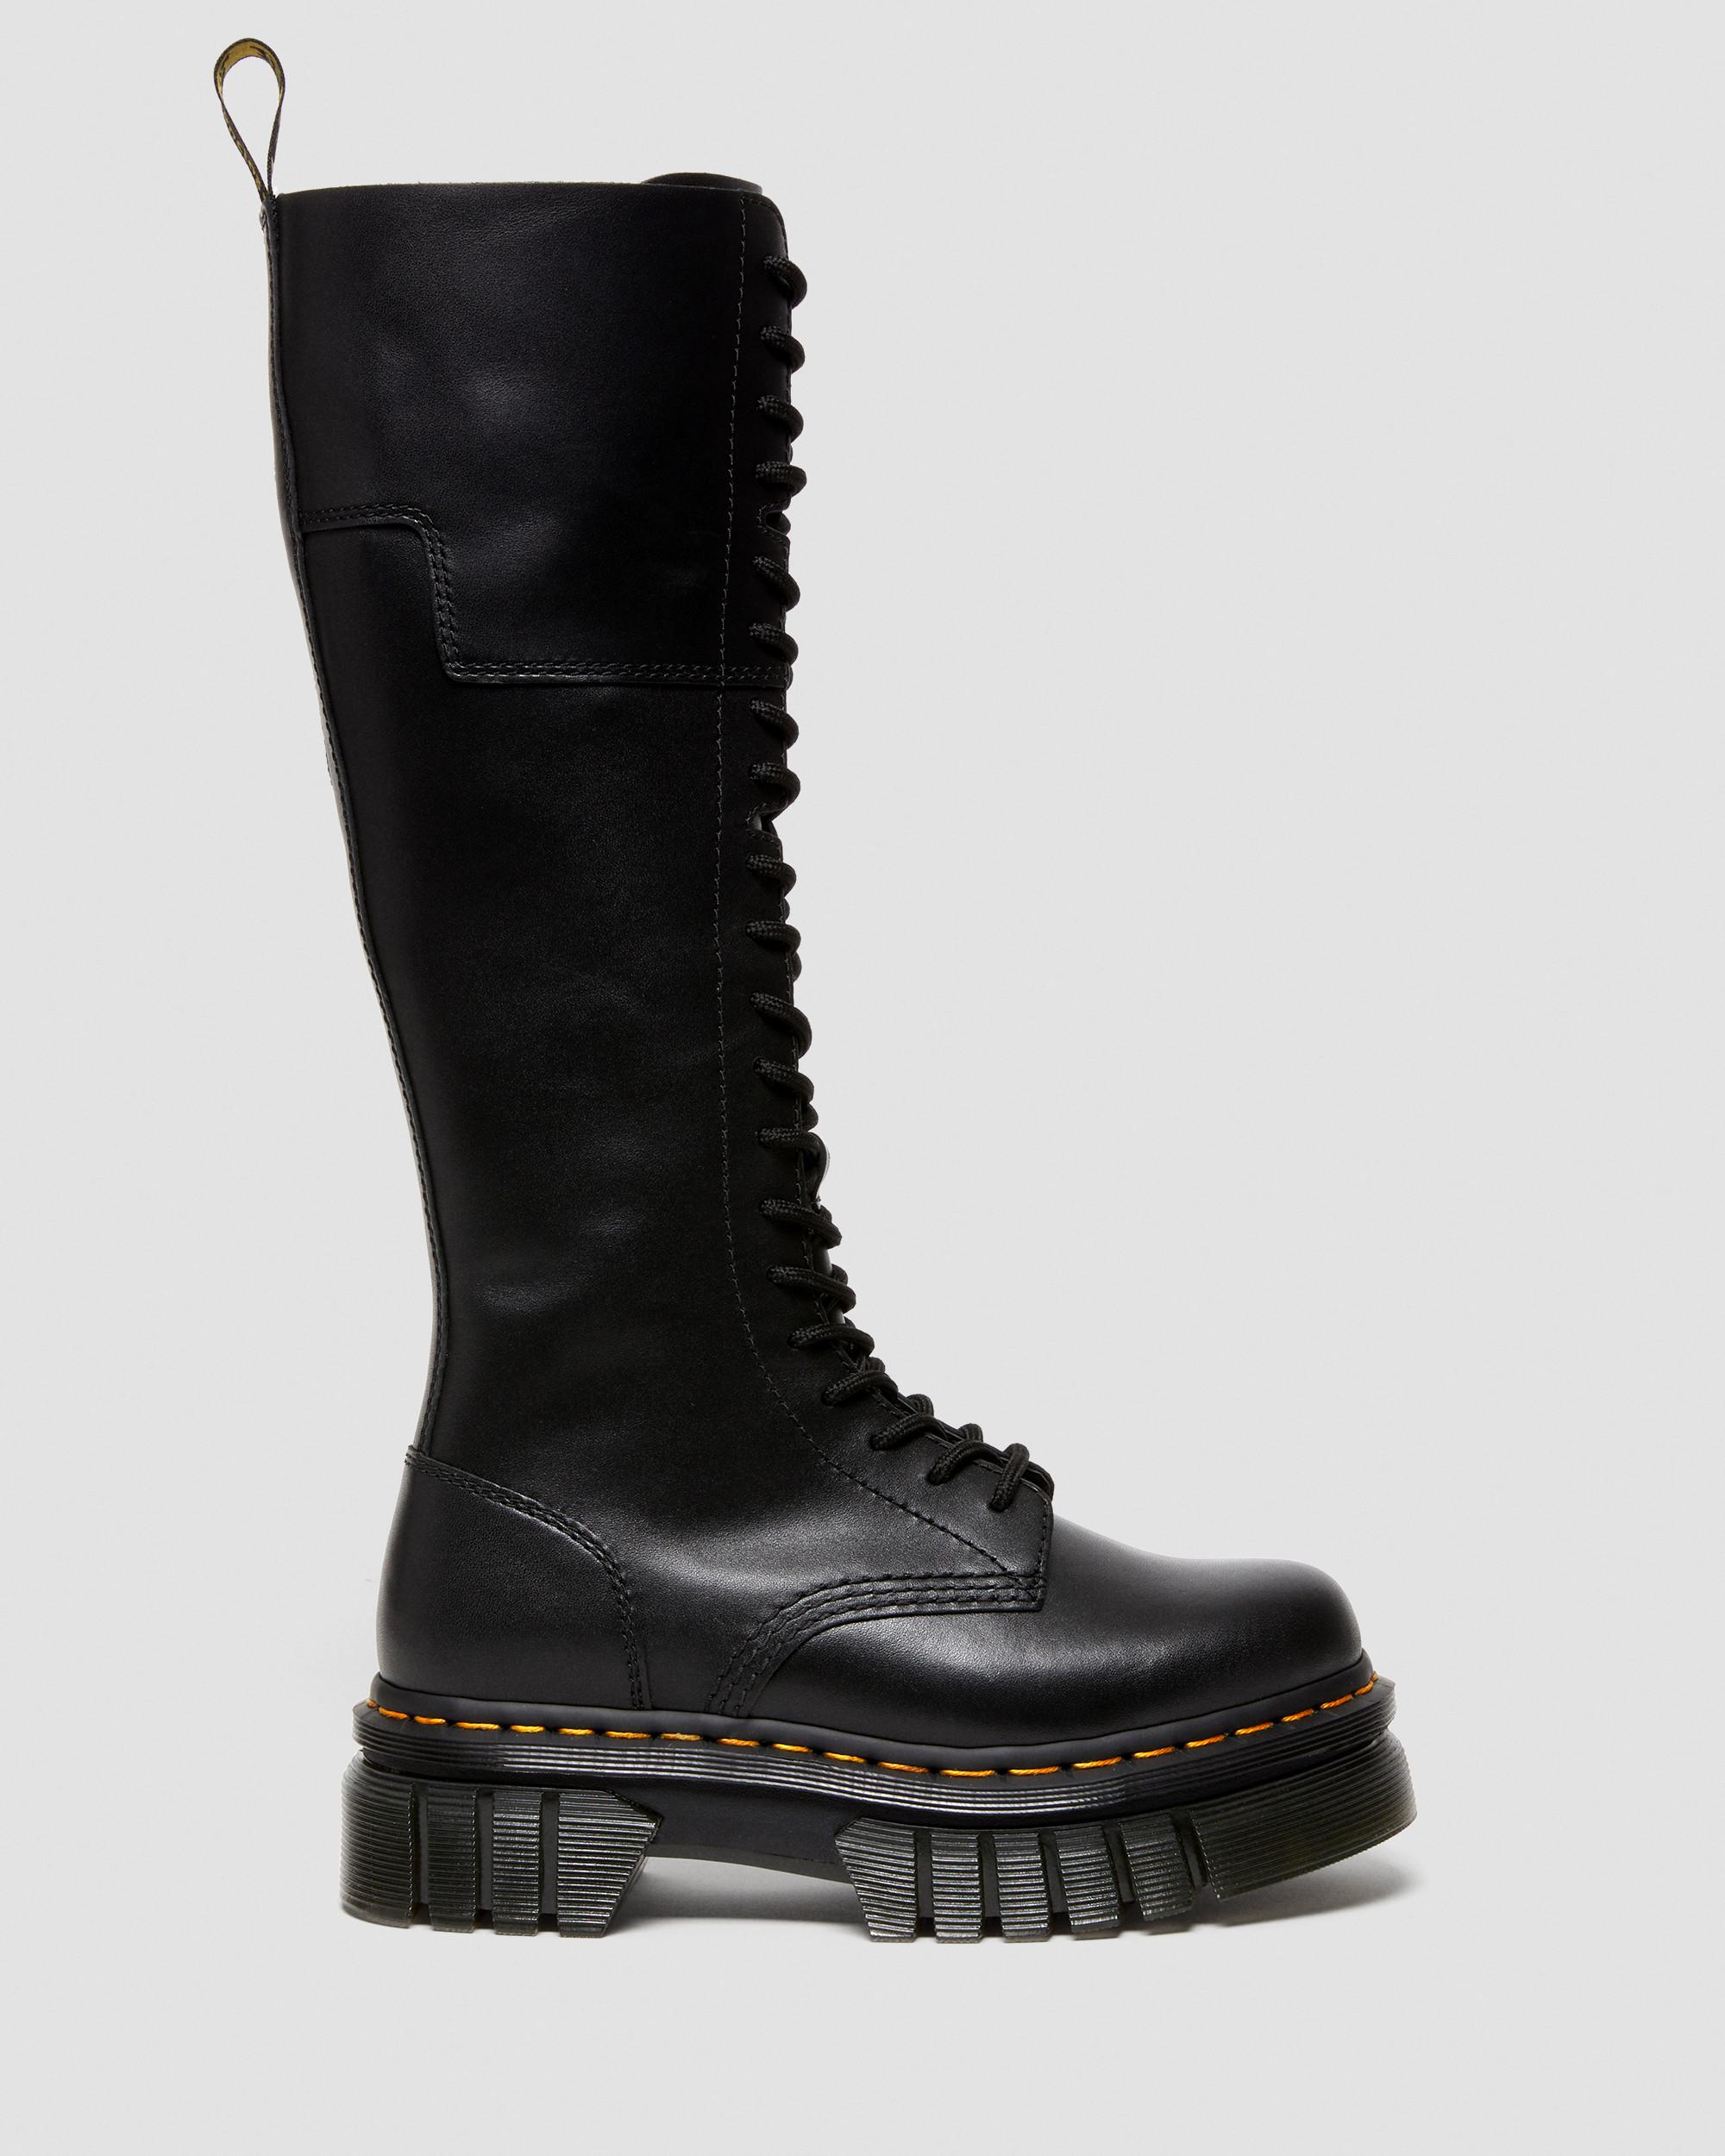 Audrick 20-Eye Leather Knee High Platform Boots in Black | Dr. Martens